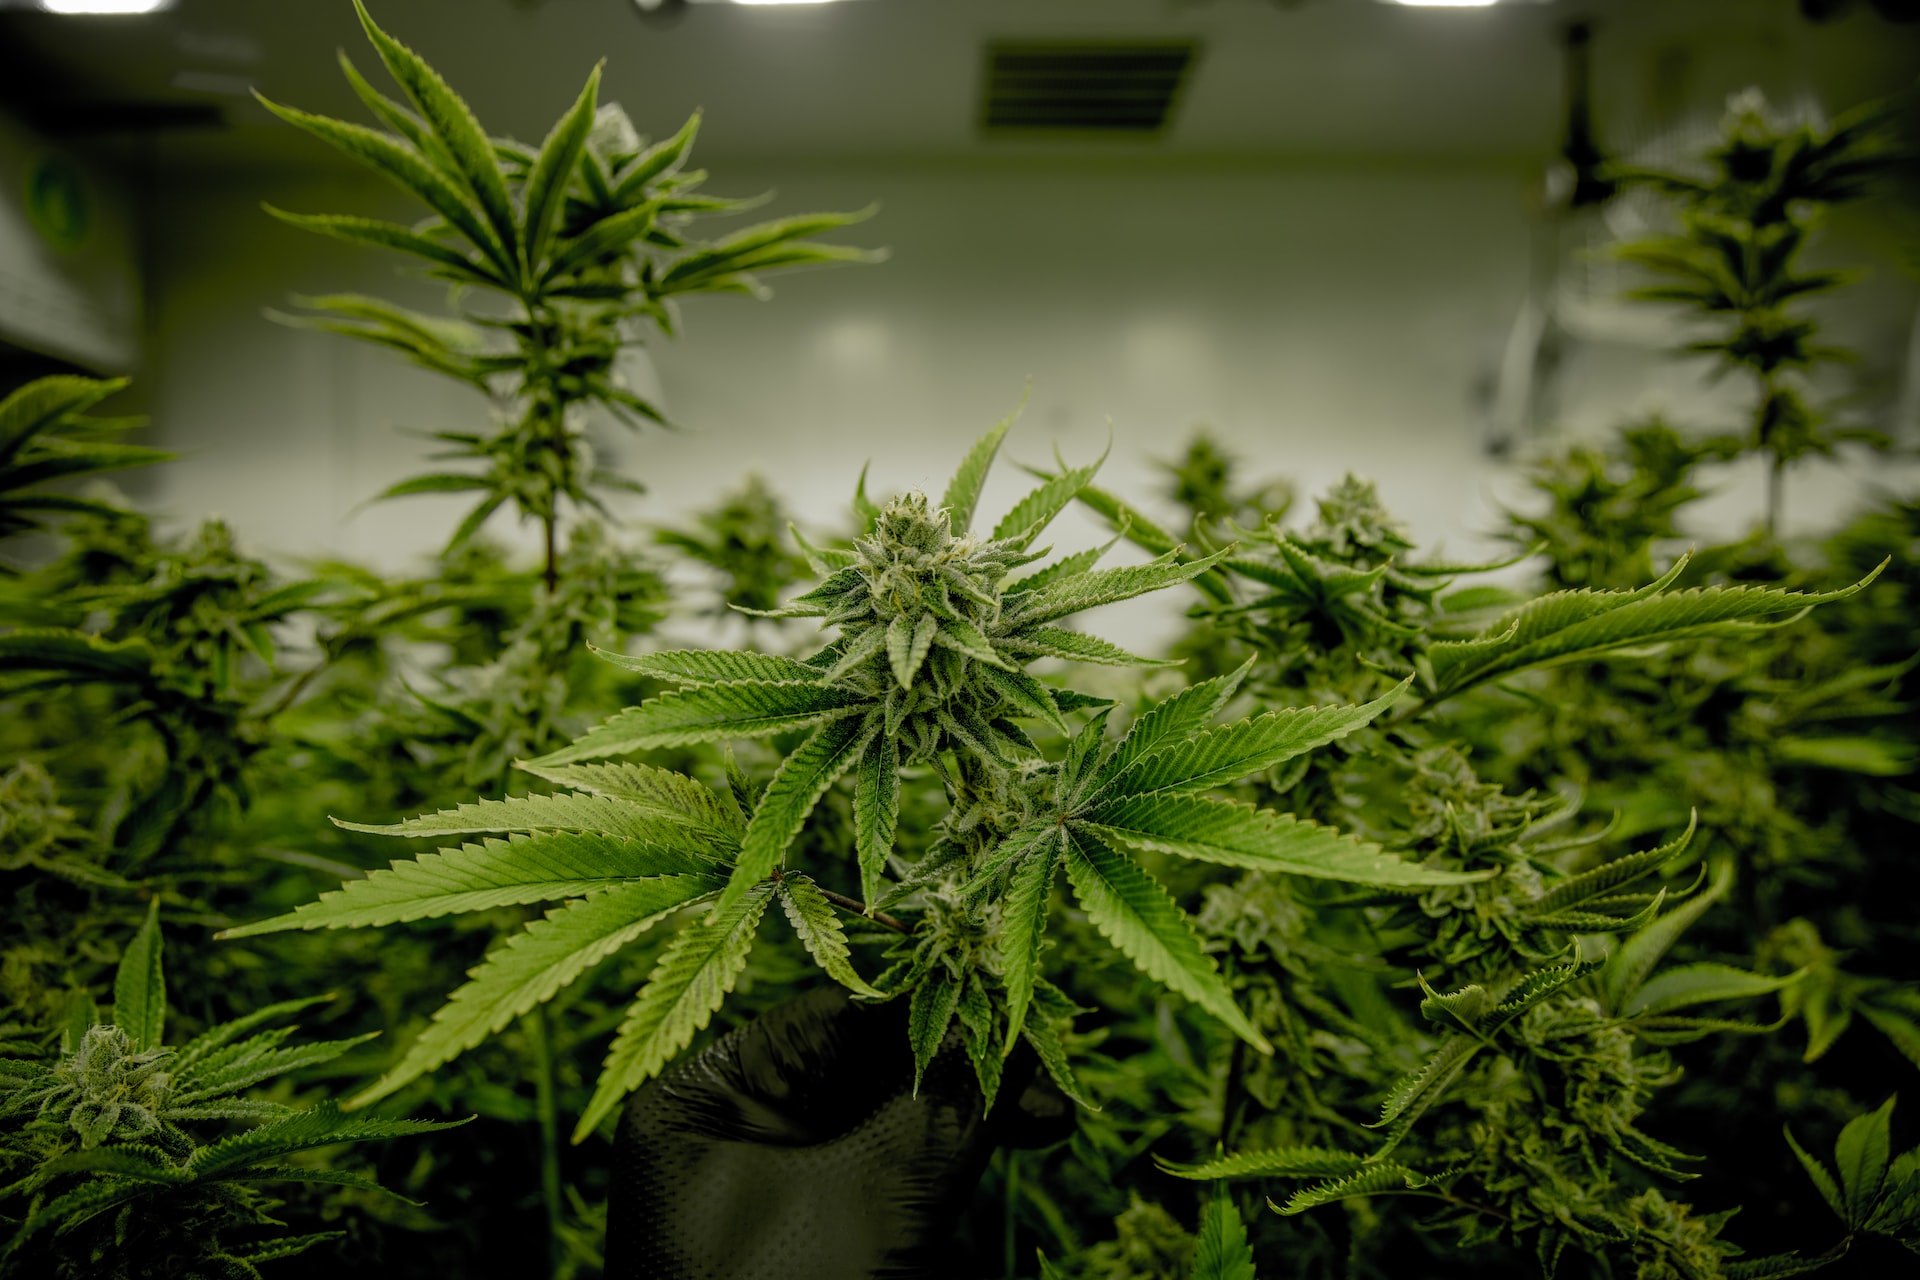 cannabis plants flowering in an indoor grow